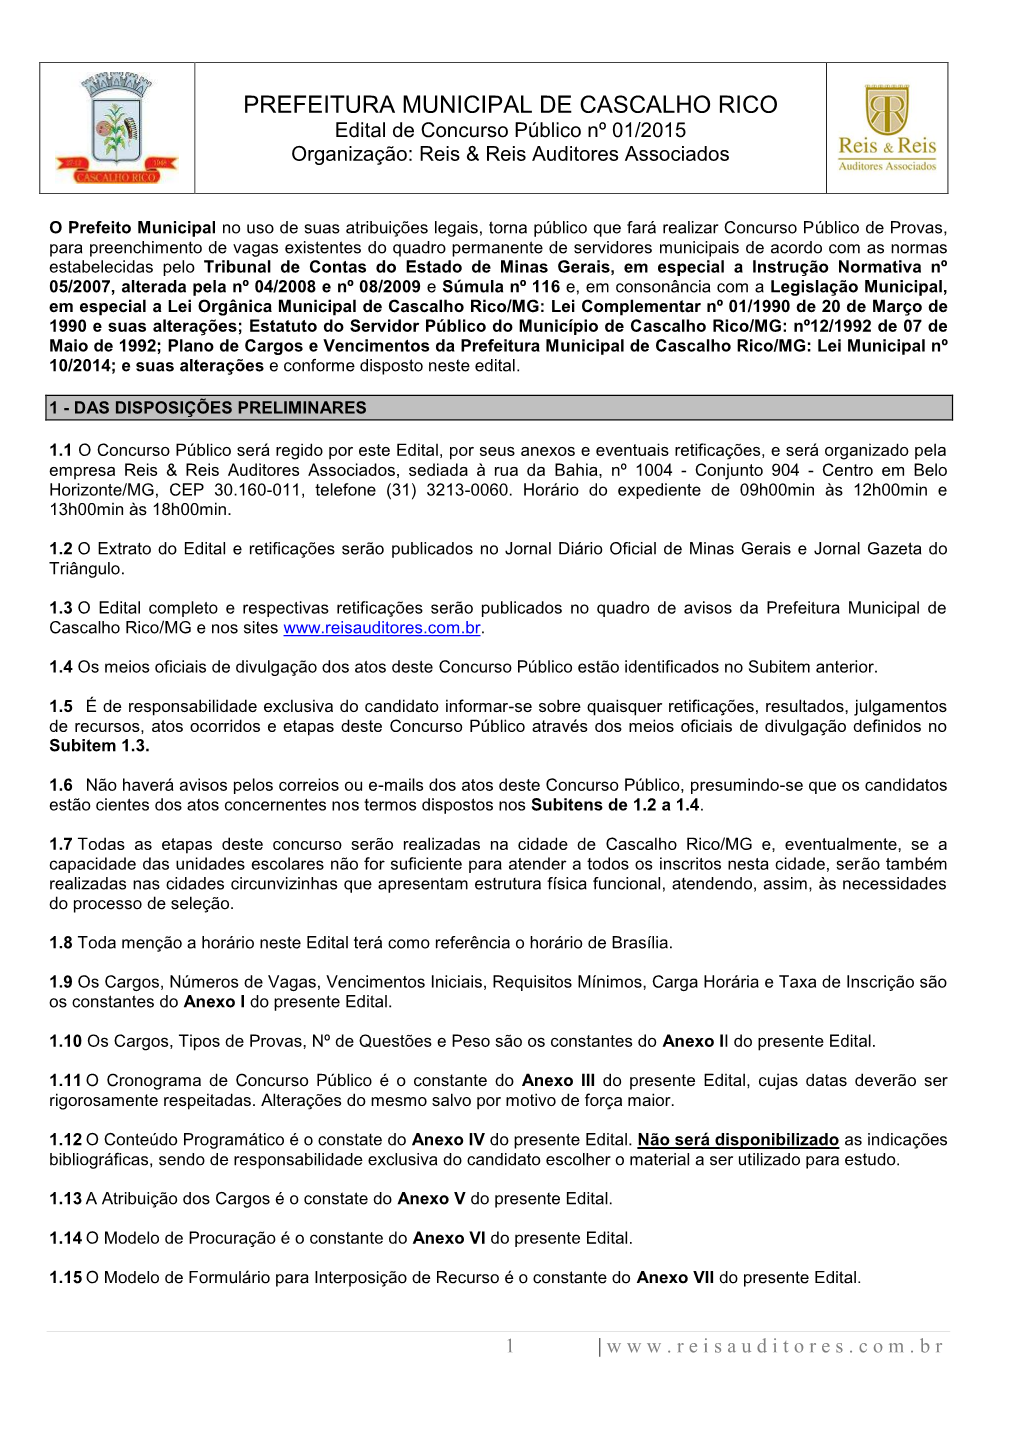 PREFEITURA MUNICIPAL DE CASCALHO RICO Edital De Concurso Público Nº 01/2015 Organização: Reis & Reis Auditores Associados